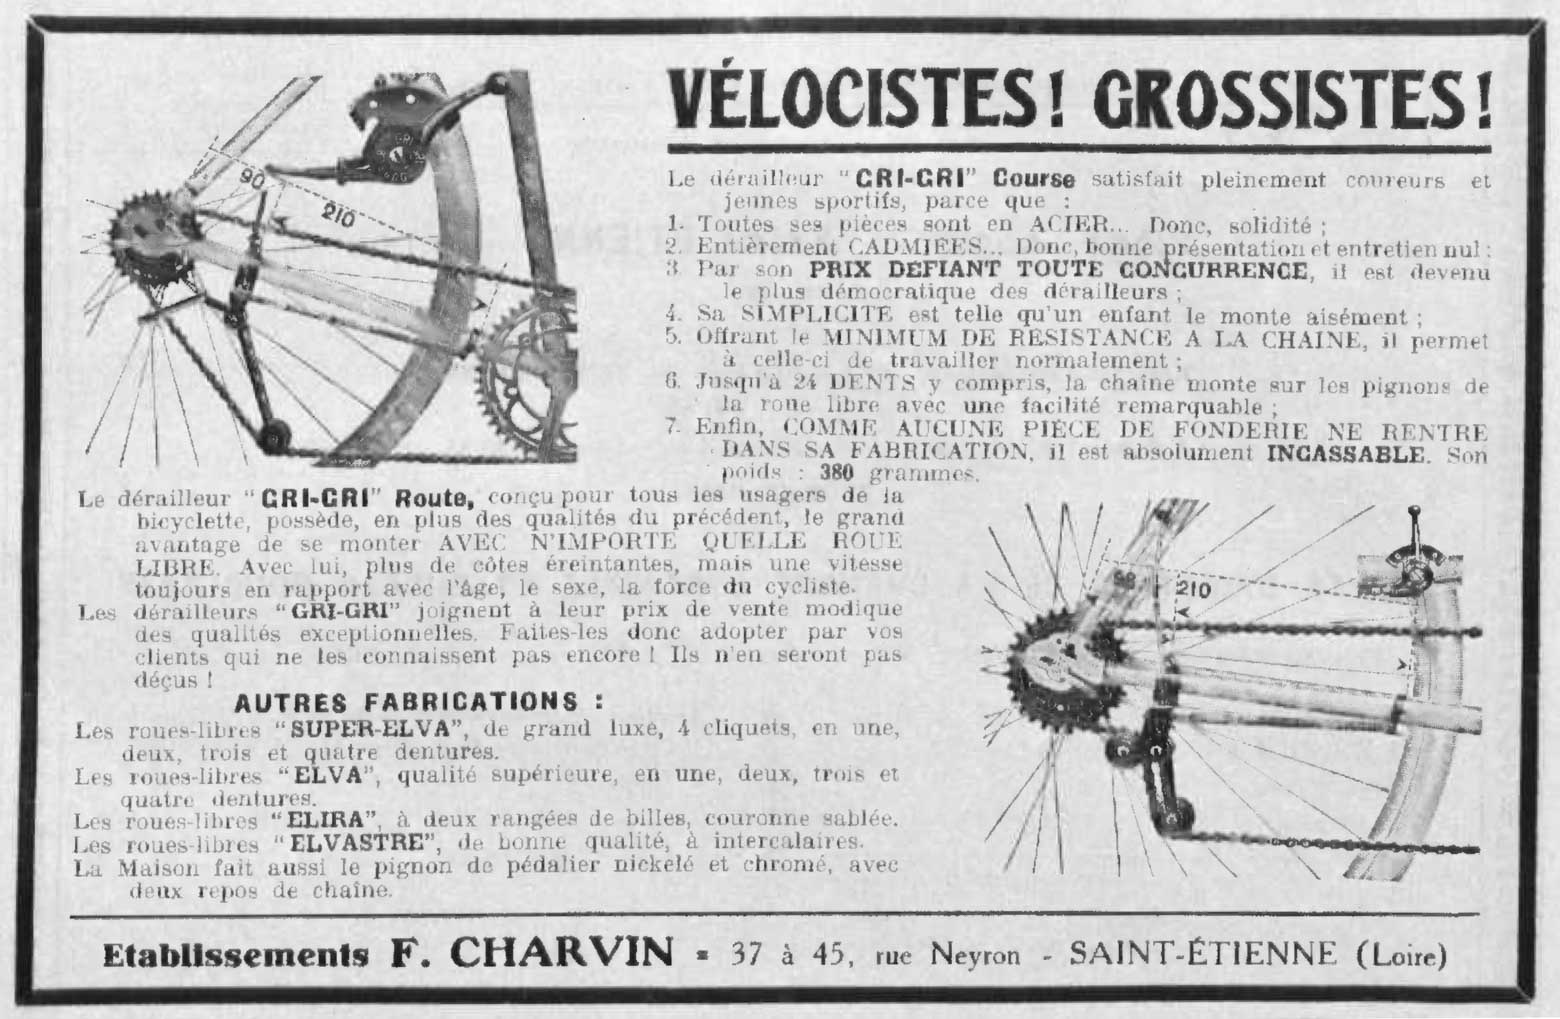 L'Industrie des Cycles et Automobiles March 1936 - Charvin advert main image